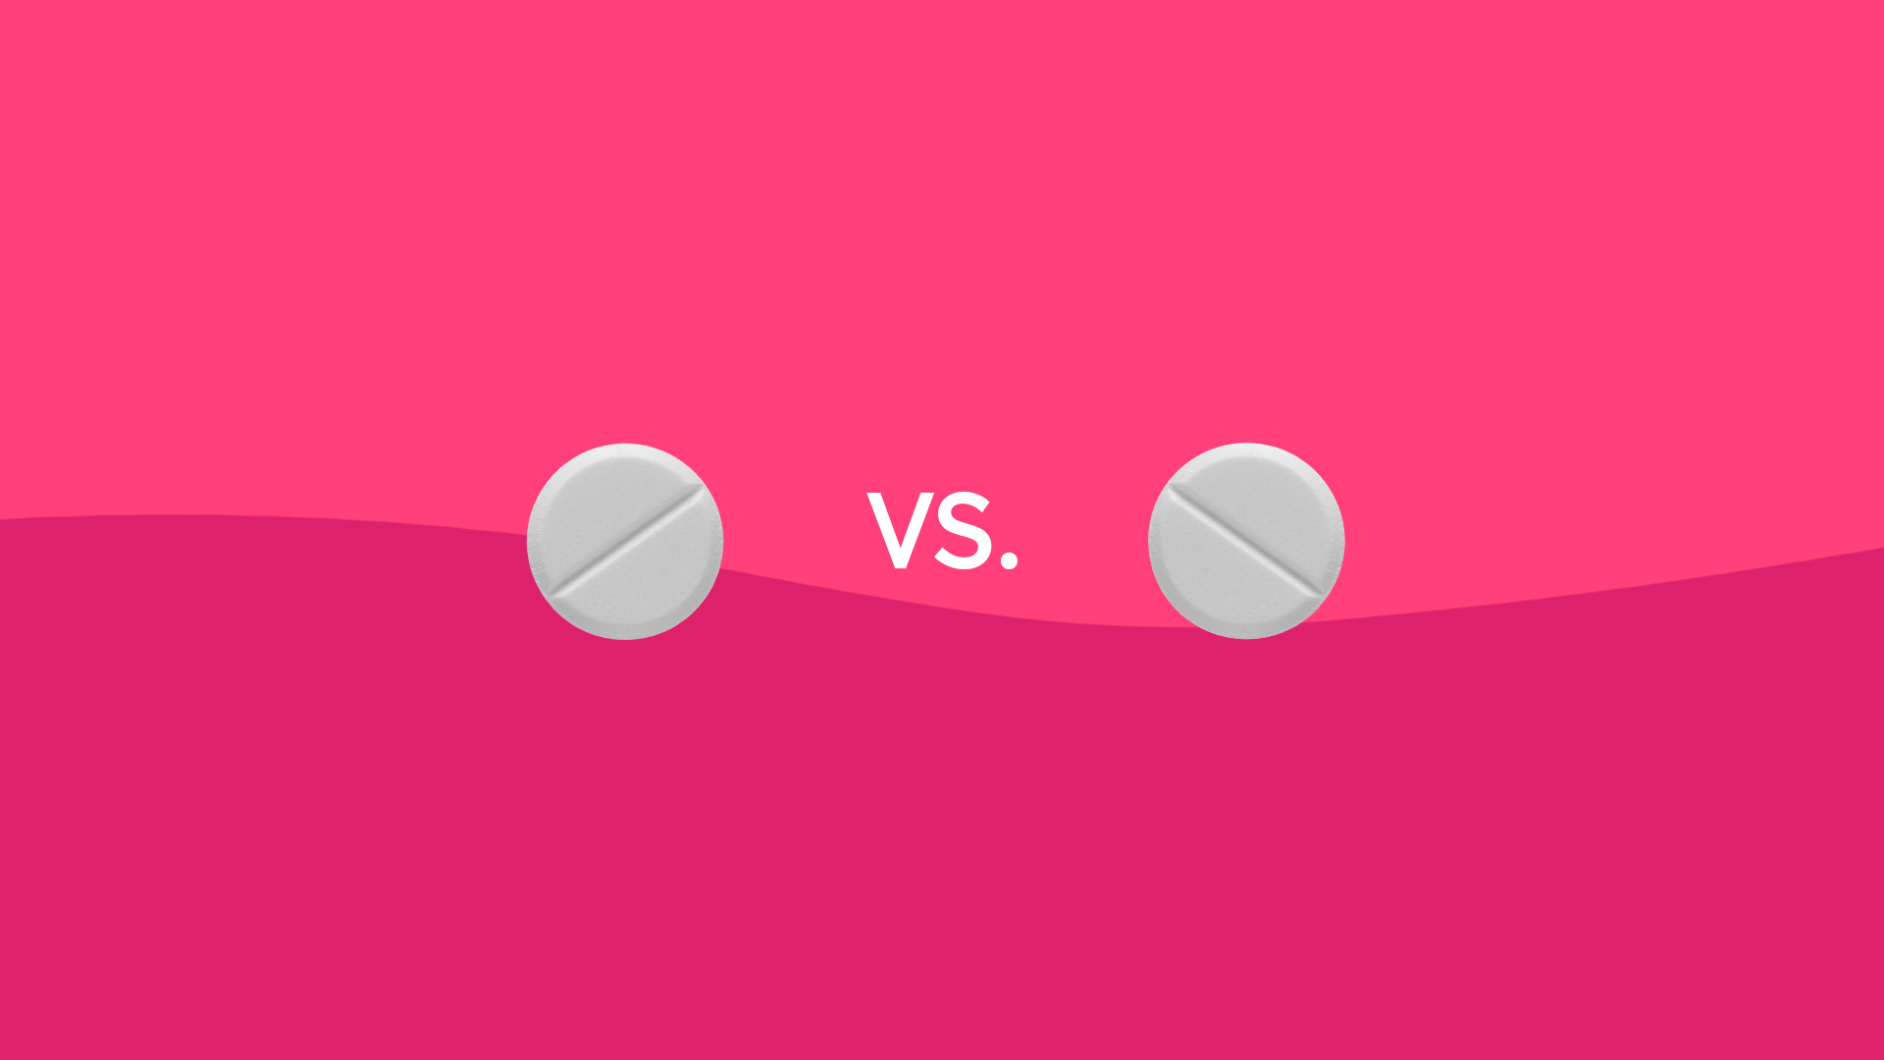 Rx drug comparison: Meloxicam vs. ibuprofen